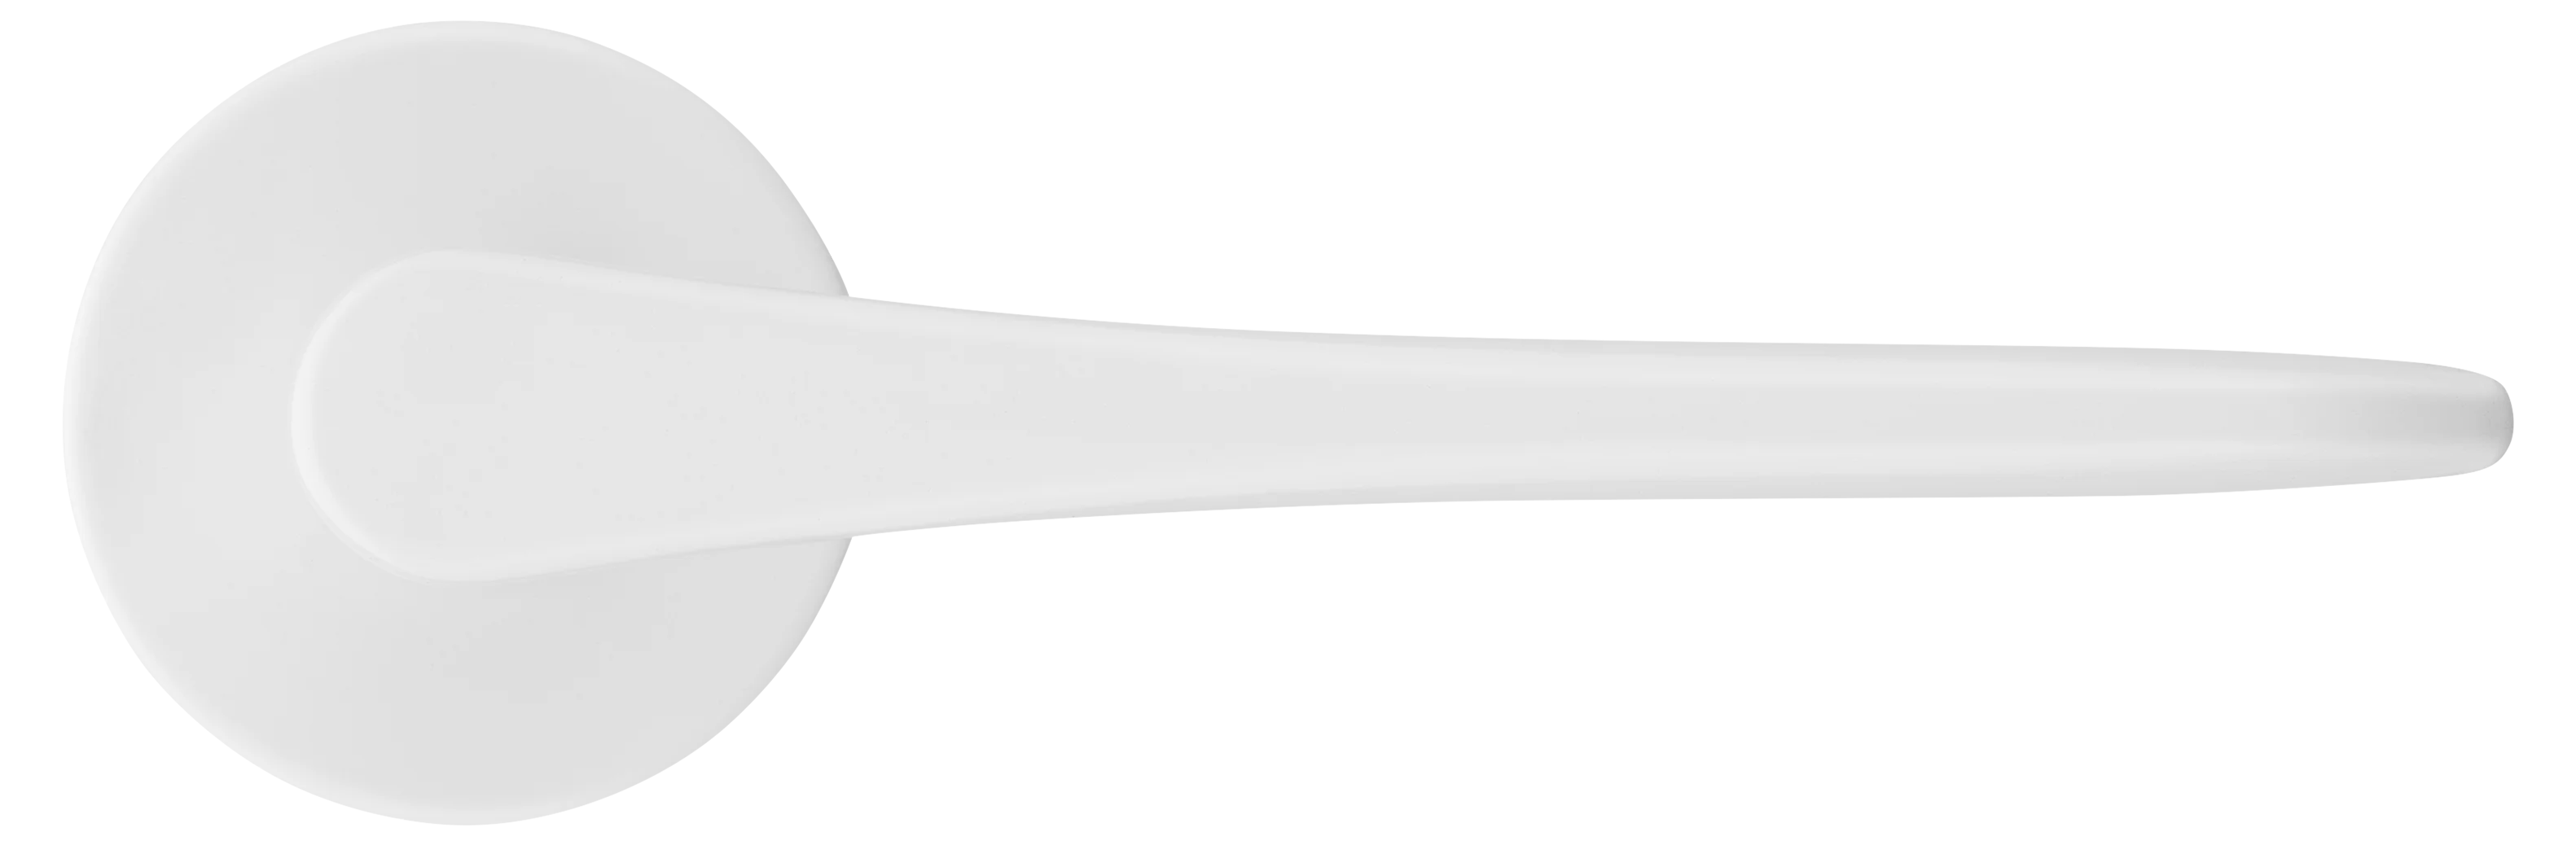 AULA R5 BIA, ручка дверная на розетке 7мм, цвет -  белый фото купить в Набережных Челнах